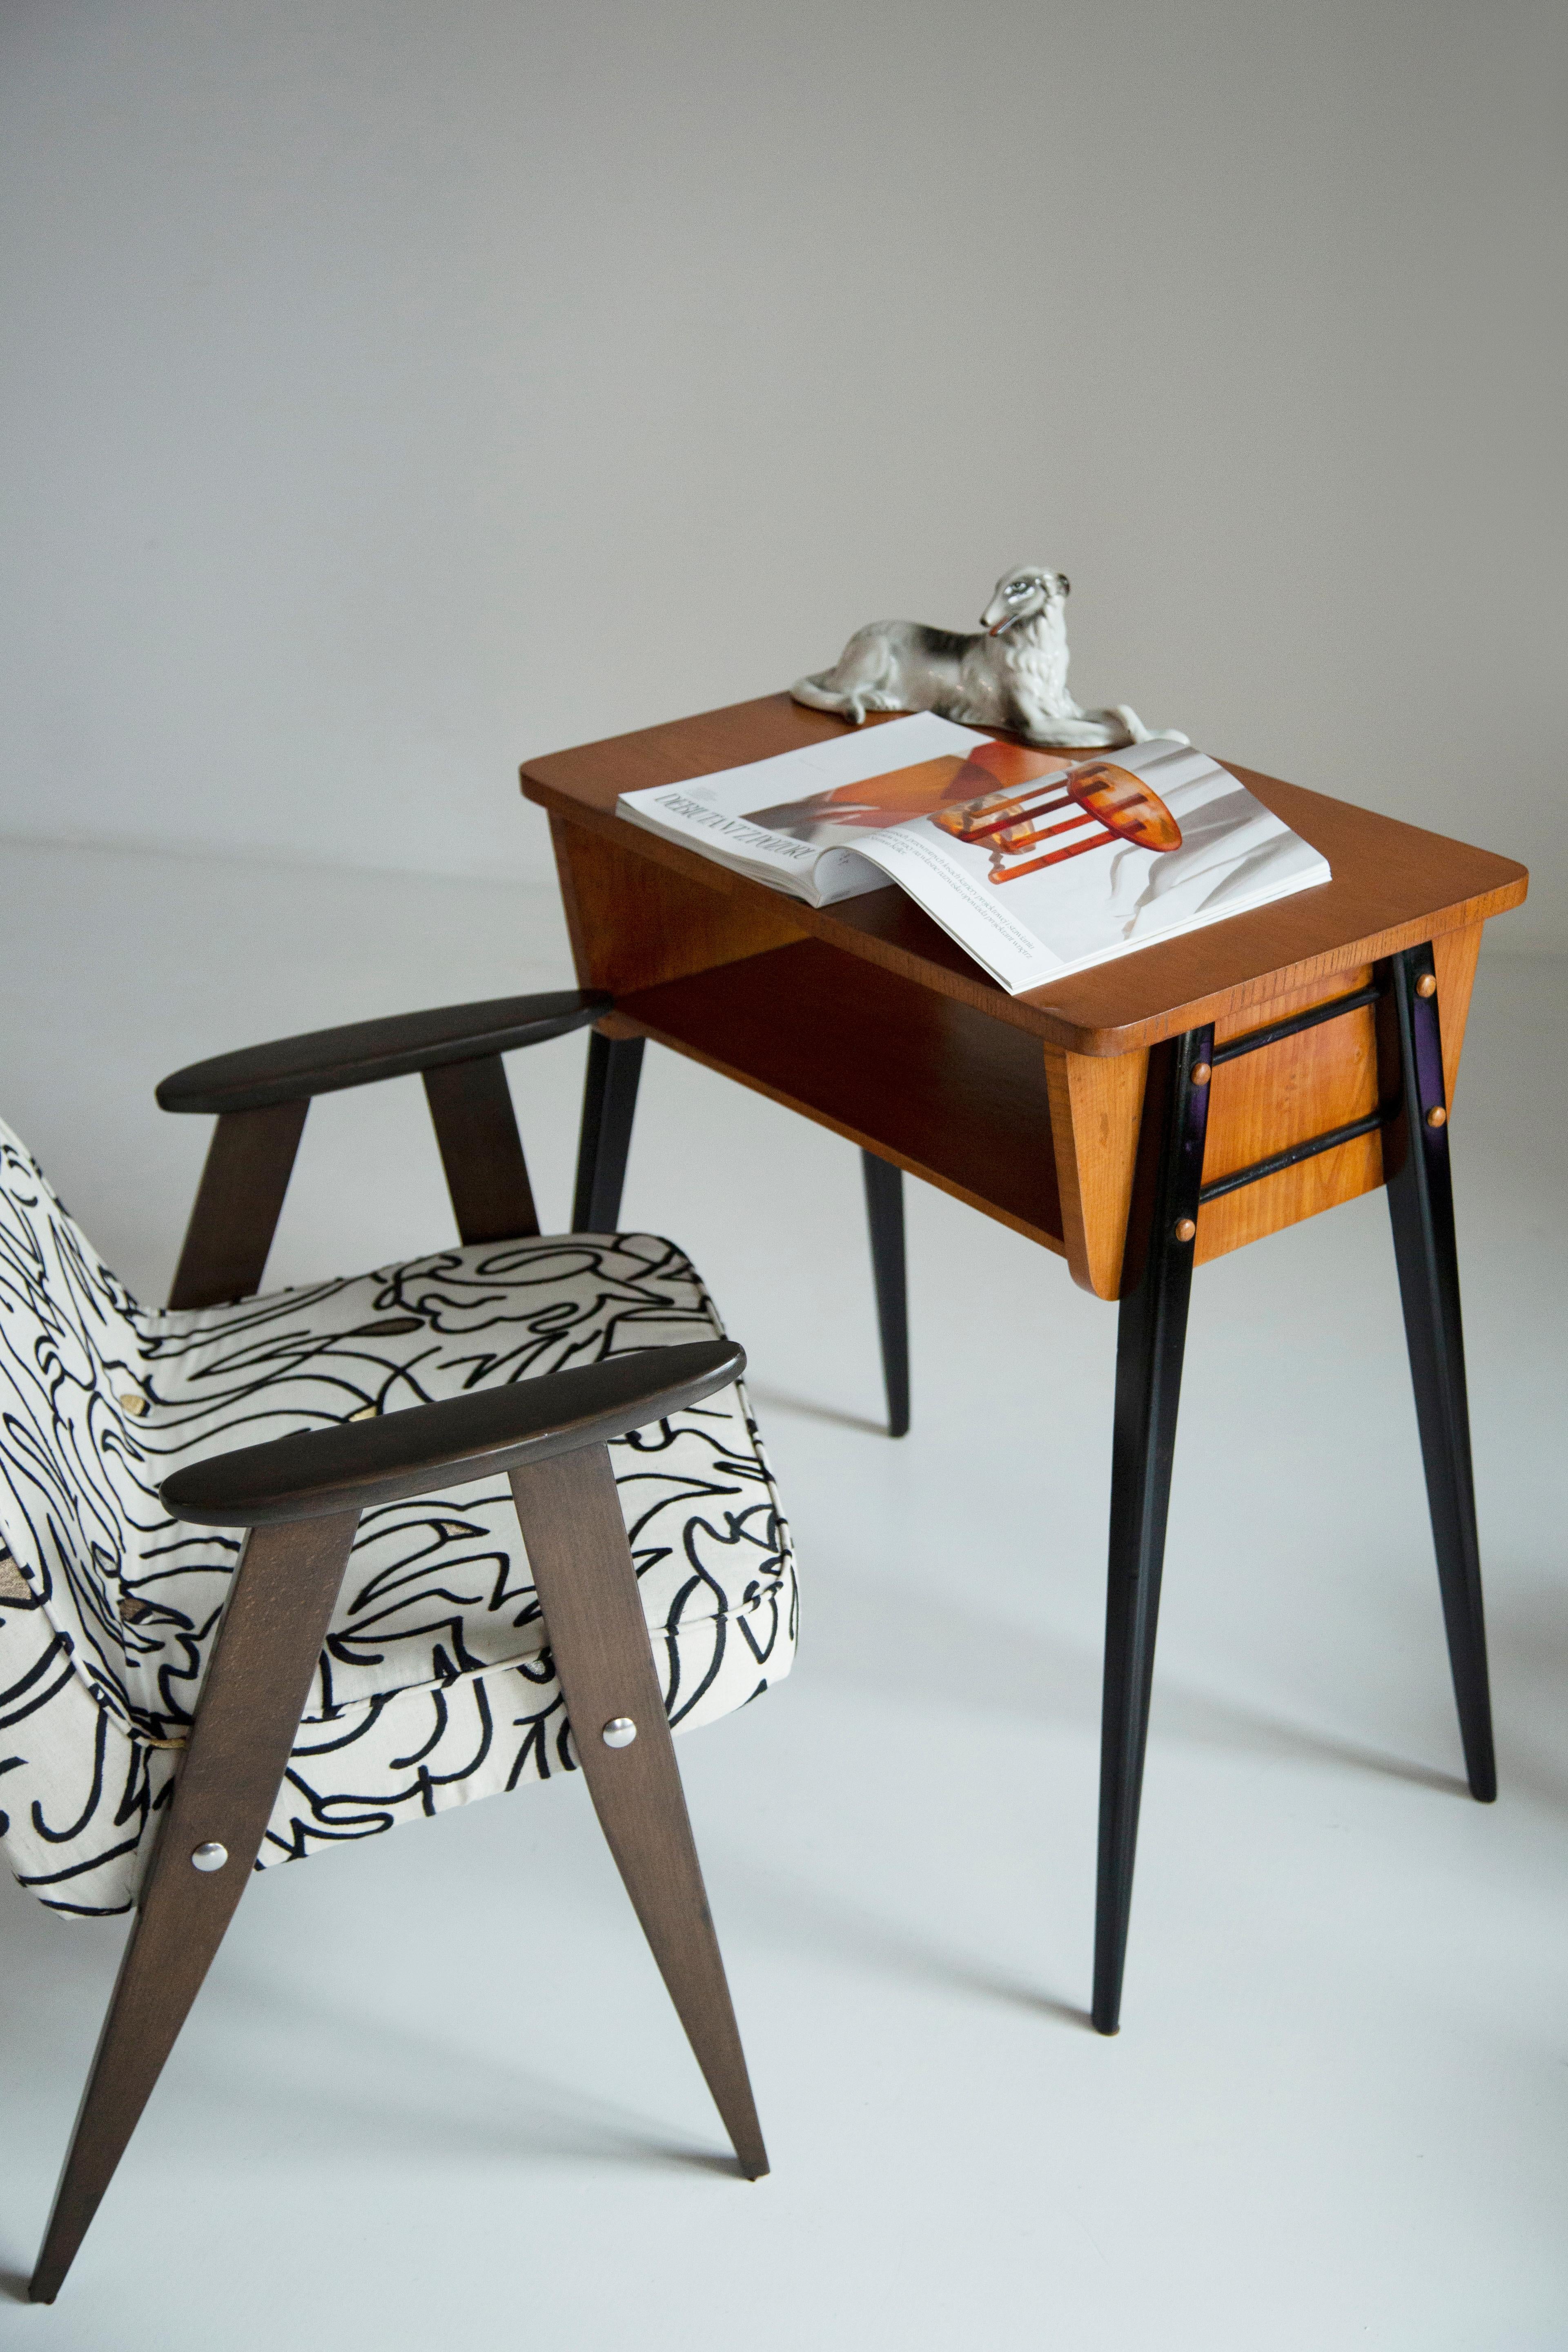 Der Sessel 366 ist eine Ikone des polnischen Designs aus der PRL-Zeit.

Der berühmte Sessel wurde 1962 von dem polnischen Innenarchitekten und Möbeldesigner Jozef Marian Chierowski entworfen. Produziert in der Niederschlesischen Möbelfabrik in